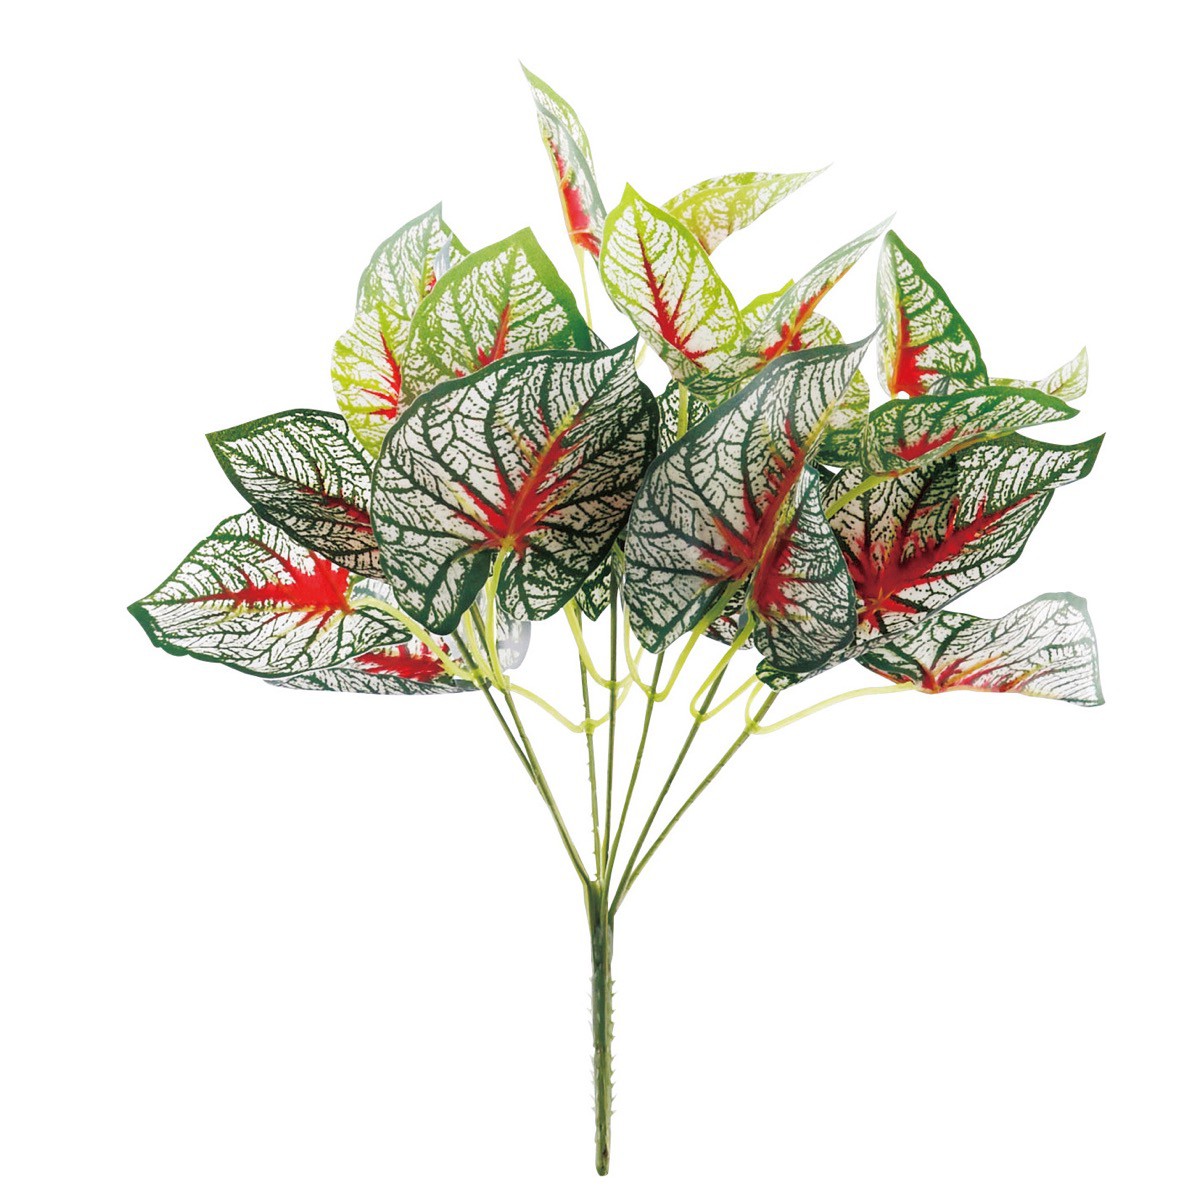 【6個から注文可能】 カラジウム 赤 30cm 人工観葉植物 フェイクグリーン 造花 インテリア おしゃれ CT触媒 消臭 抗菌